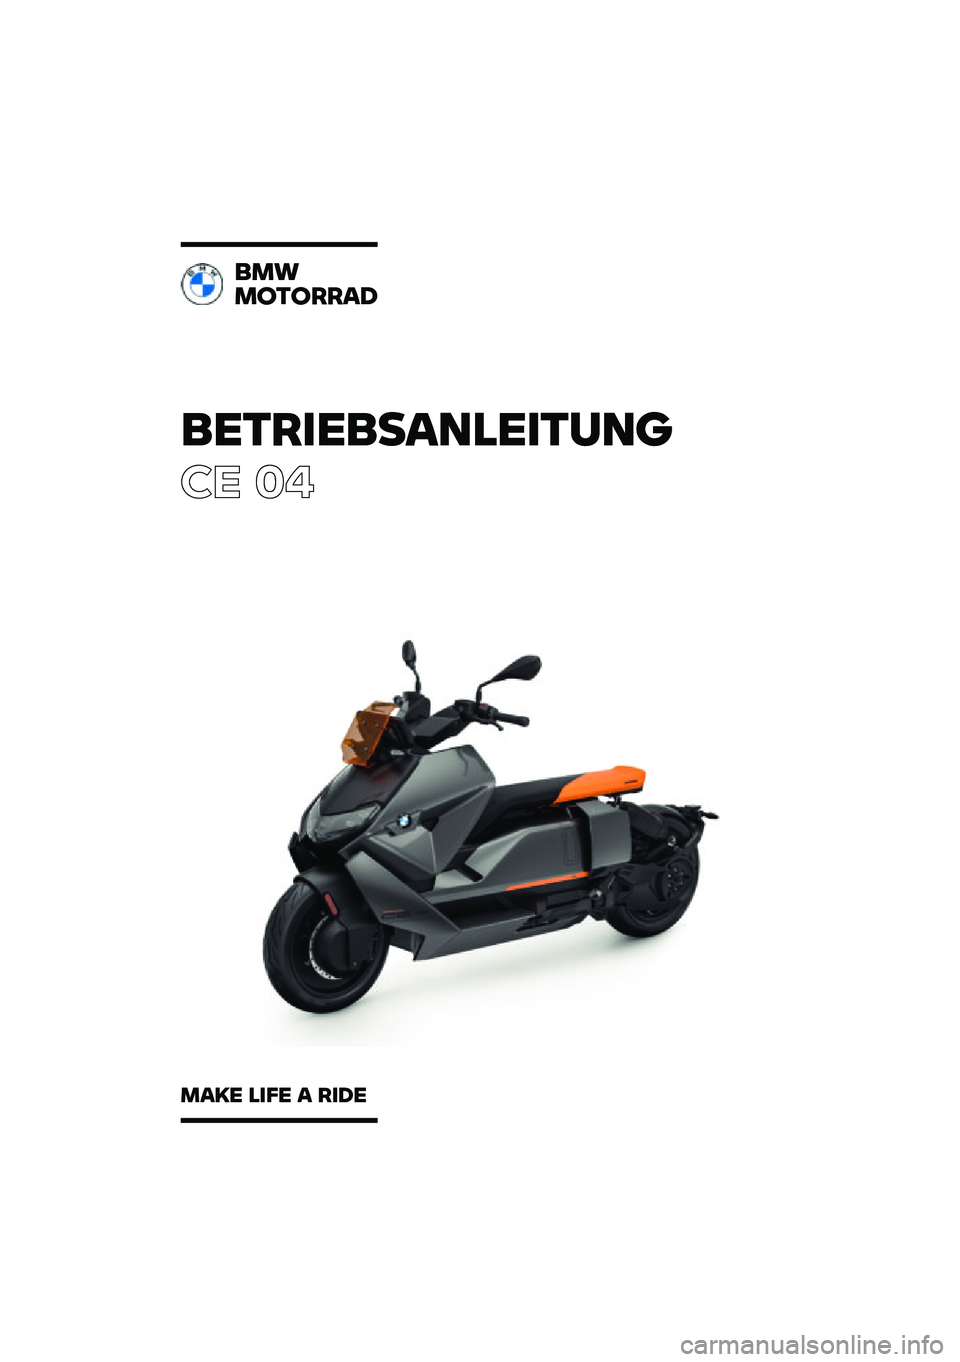 BMW MOTORRAD CE 04 2021  Betriebsanleitung (in German) ���������\b�	�
�����	�\f
�� ��
��
�
�
������\b�
�
�\b�� �
��� �\b ���� 